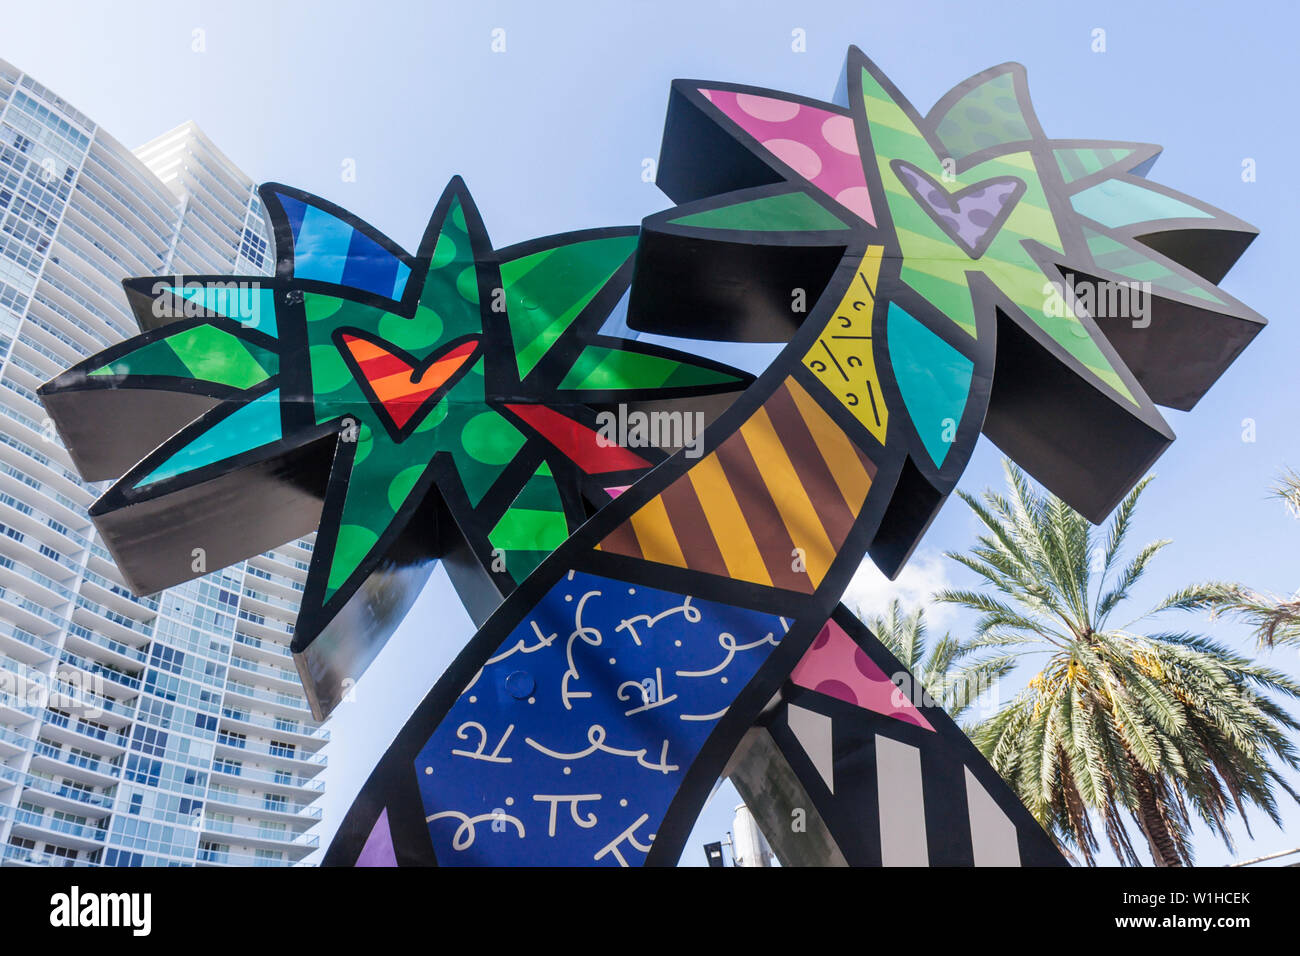 Miami Beach Florida,Fifth & Alton,art in public places,Romero Britto,sculpture,palm trees,colorful,stripes,polka dots,FL091008099 Stock Photo